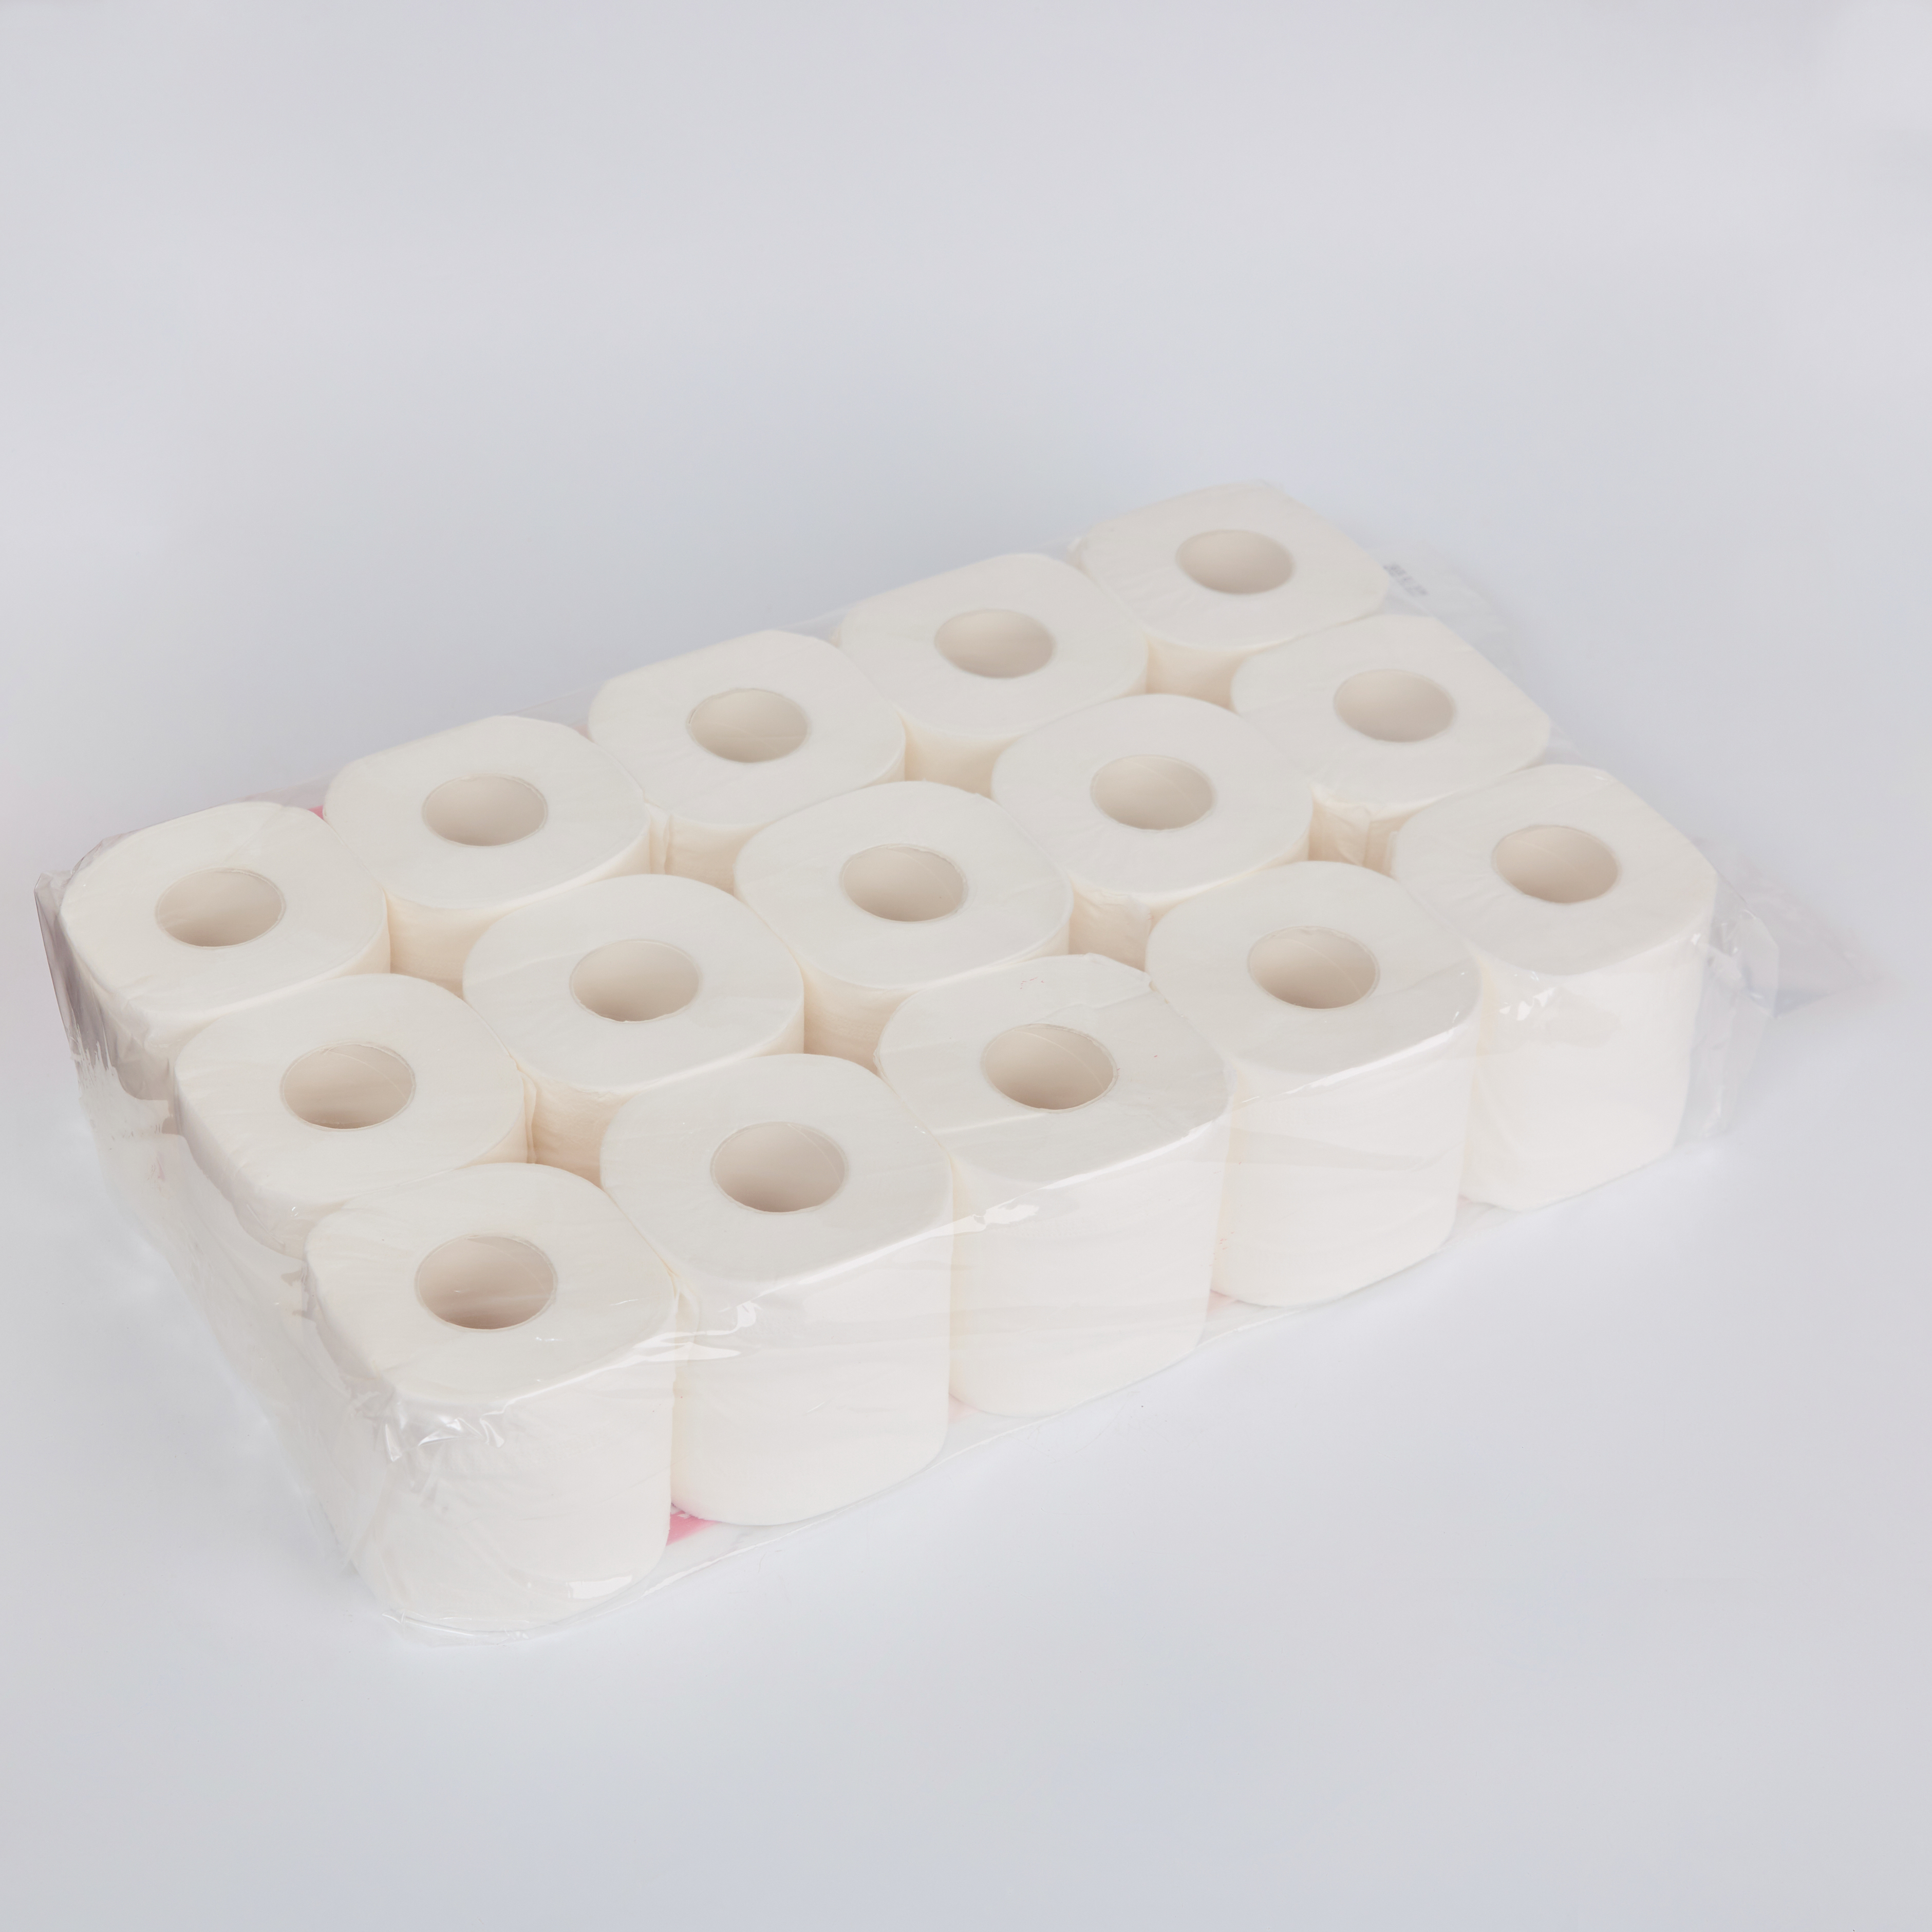 Giấy vệ sinh Silkwell Cherry 15 cuộn 3 lớp có lõi cao cấp, giấy vệ sinh siêu mềm mịn không tẩy trắng hàng chính hãng